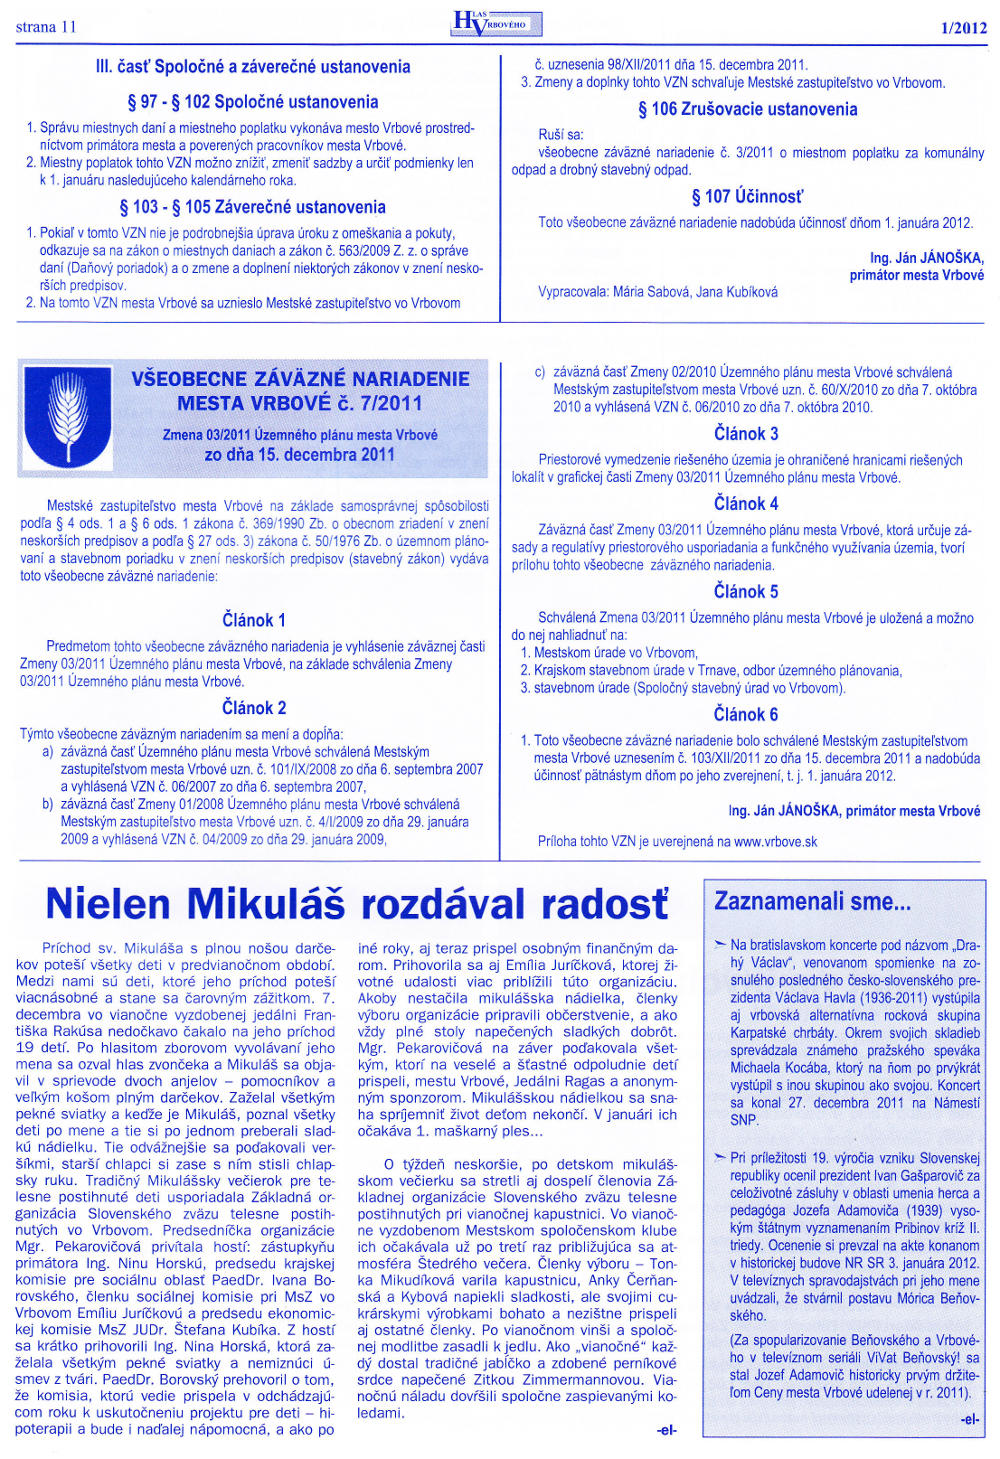 Hlas Vrbového 01/2012, strana 9